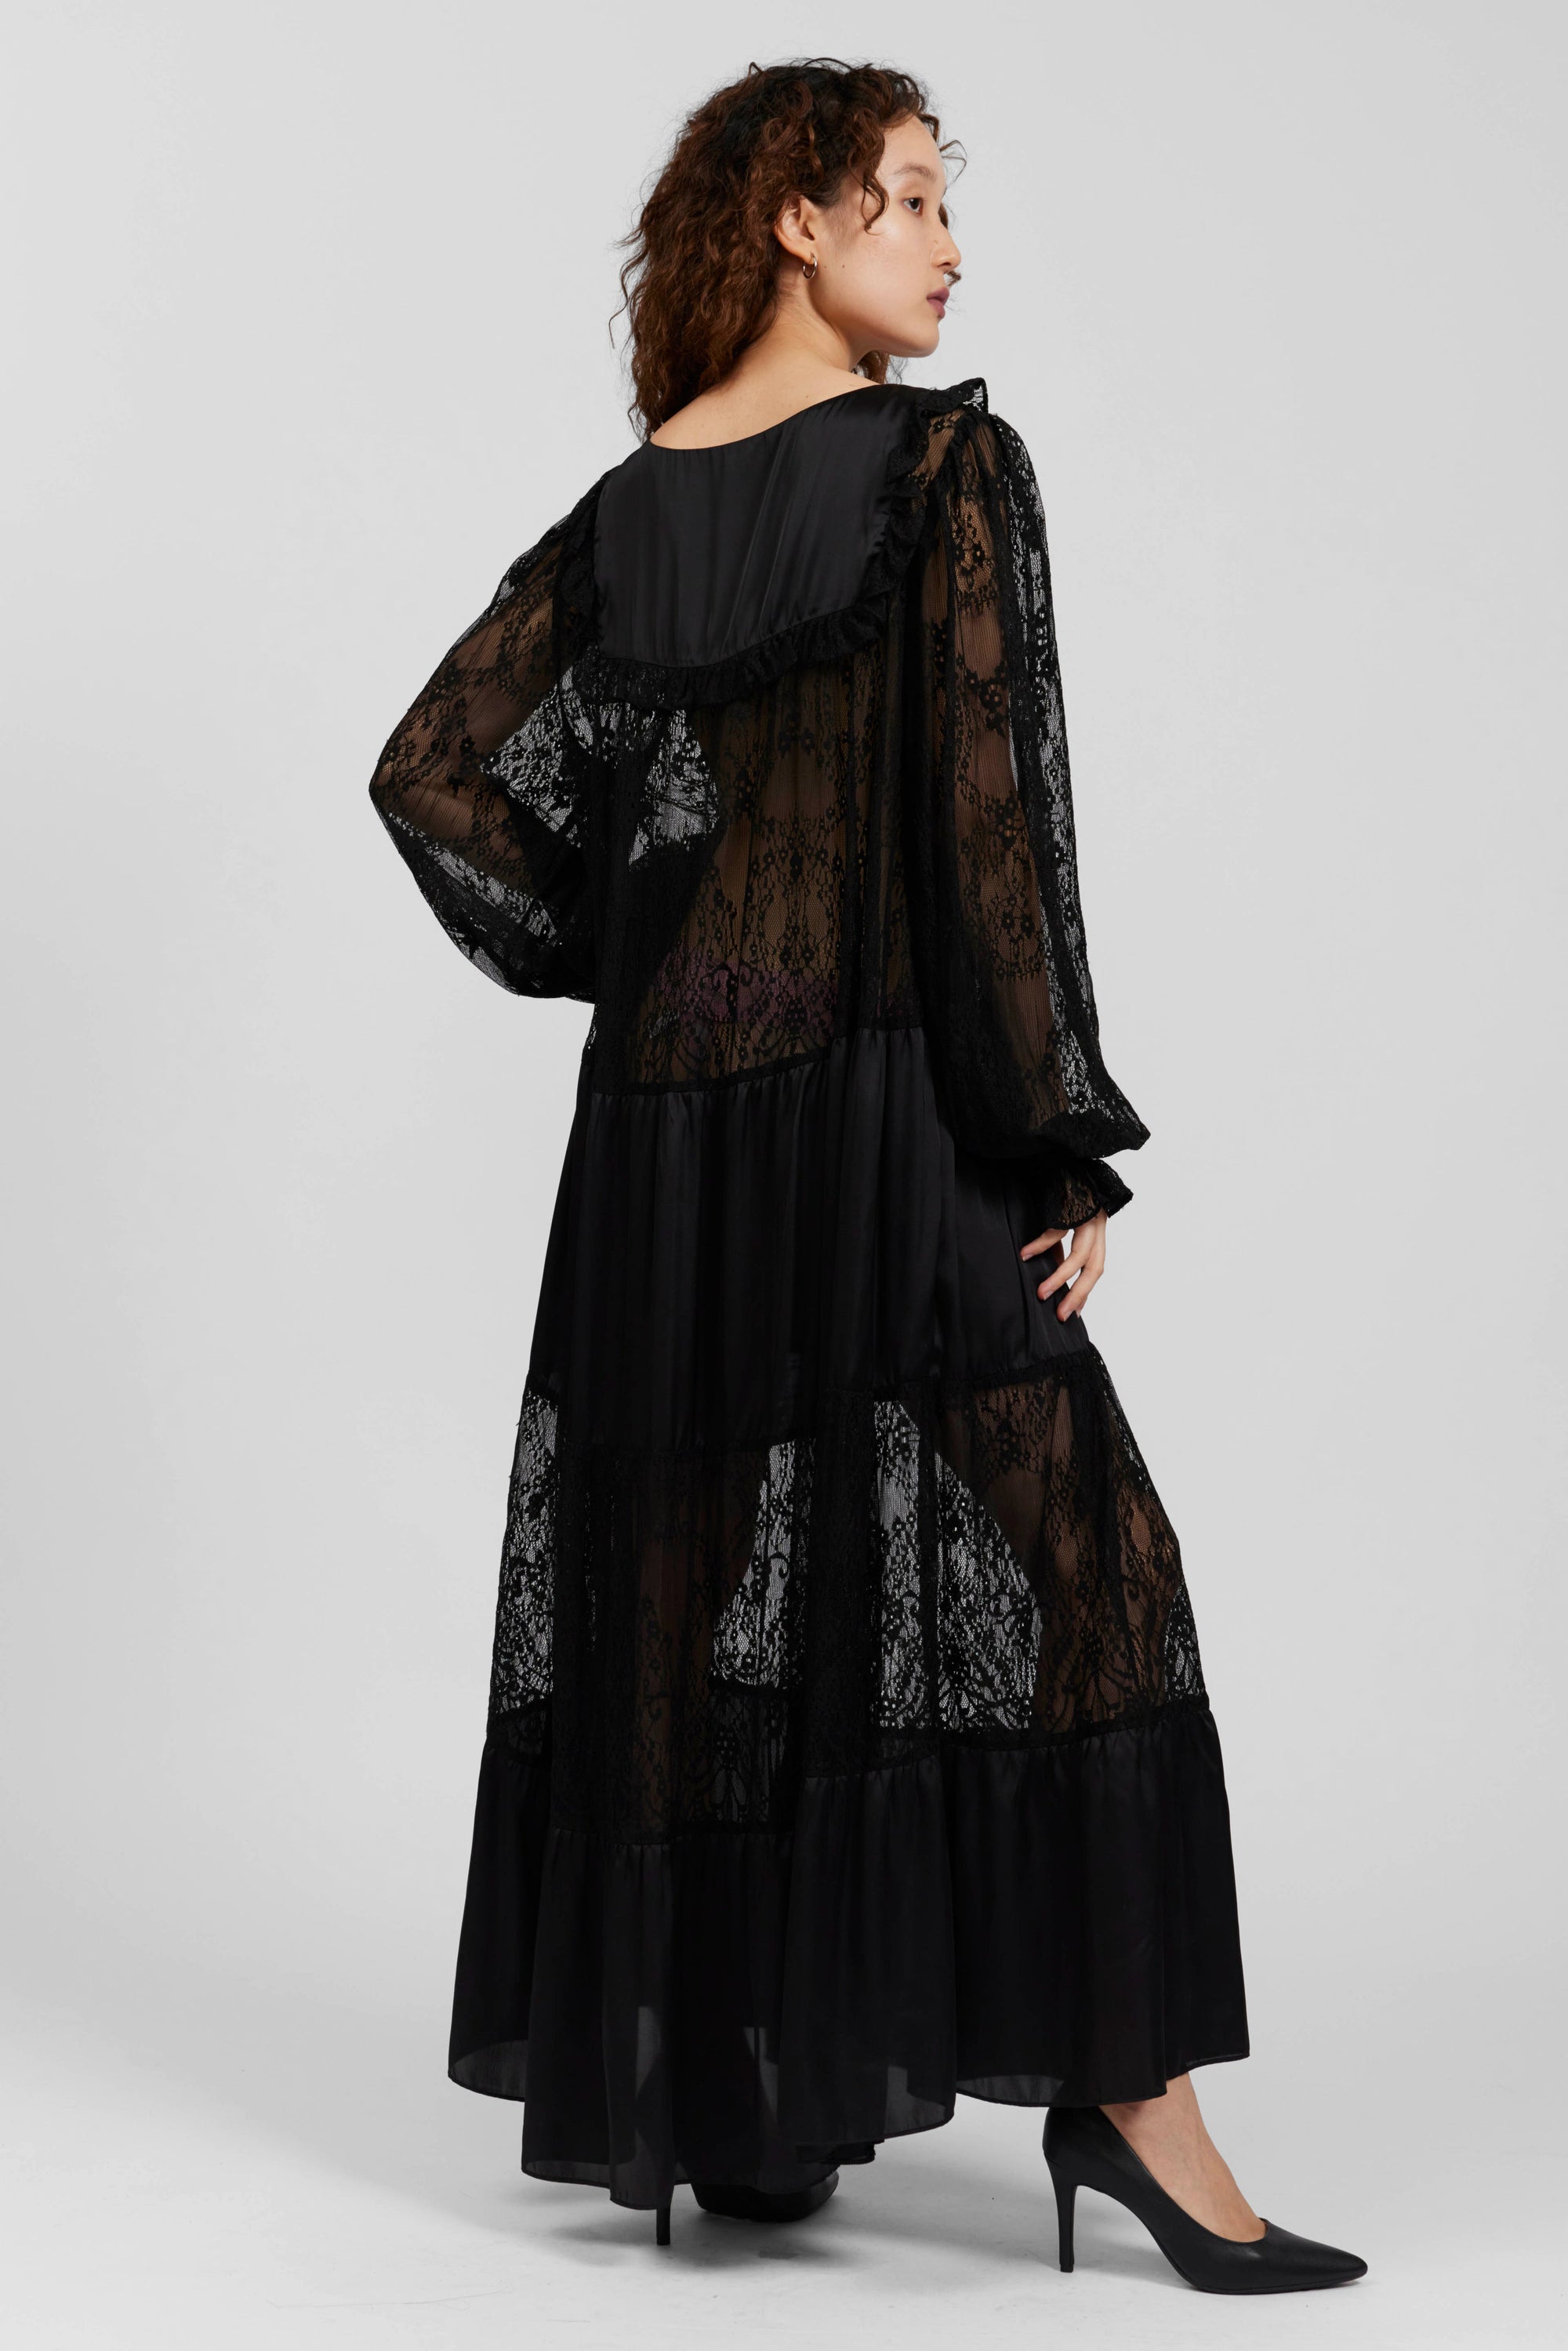 Phoebe Dress in Black Satin by Batsheva http://www.shoprecital.com